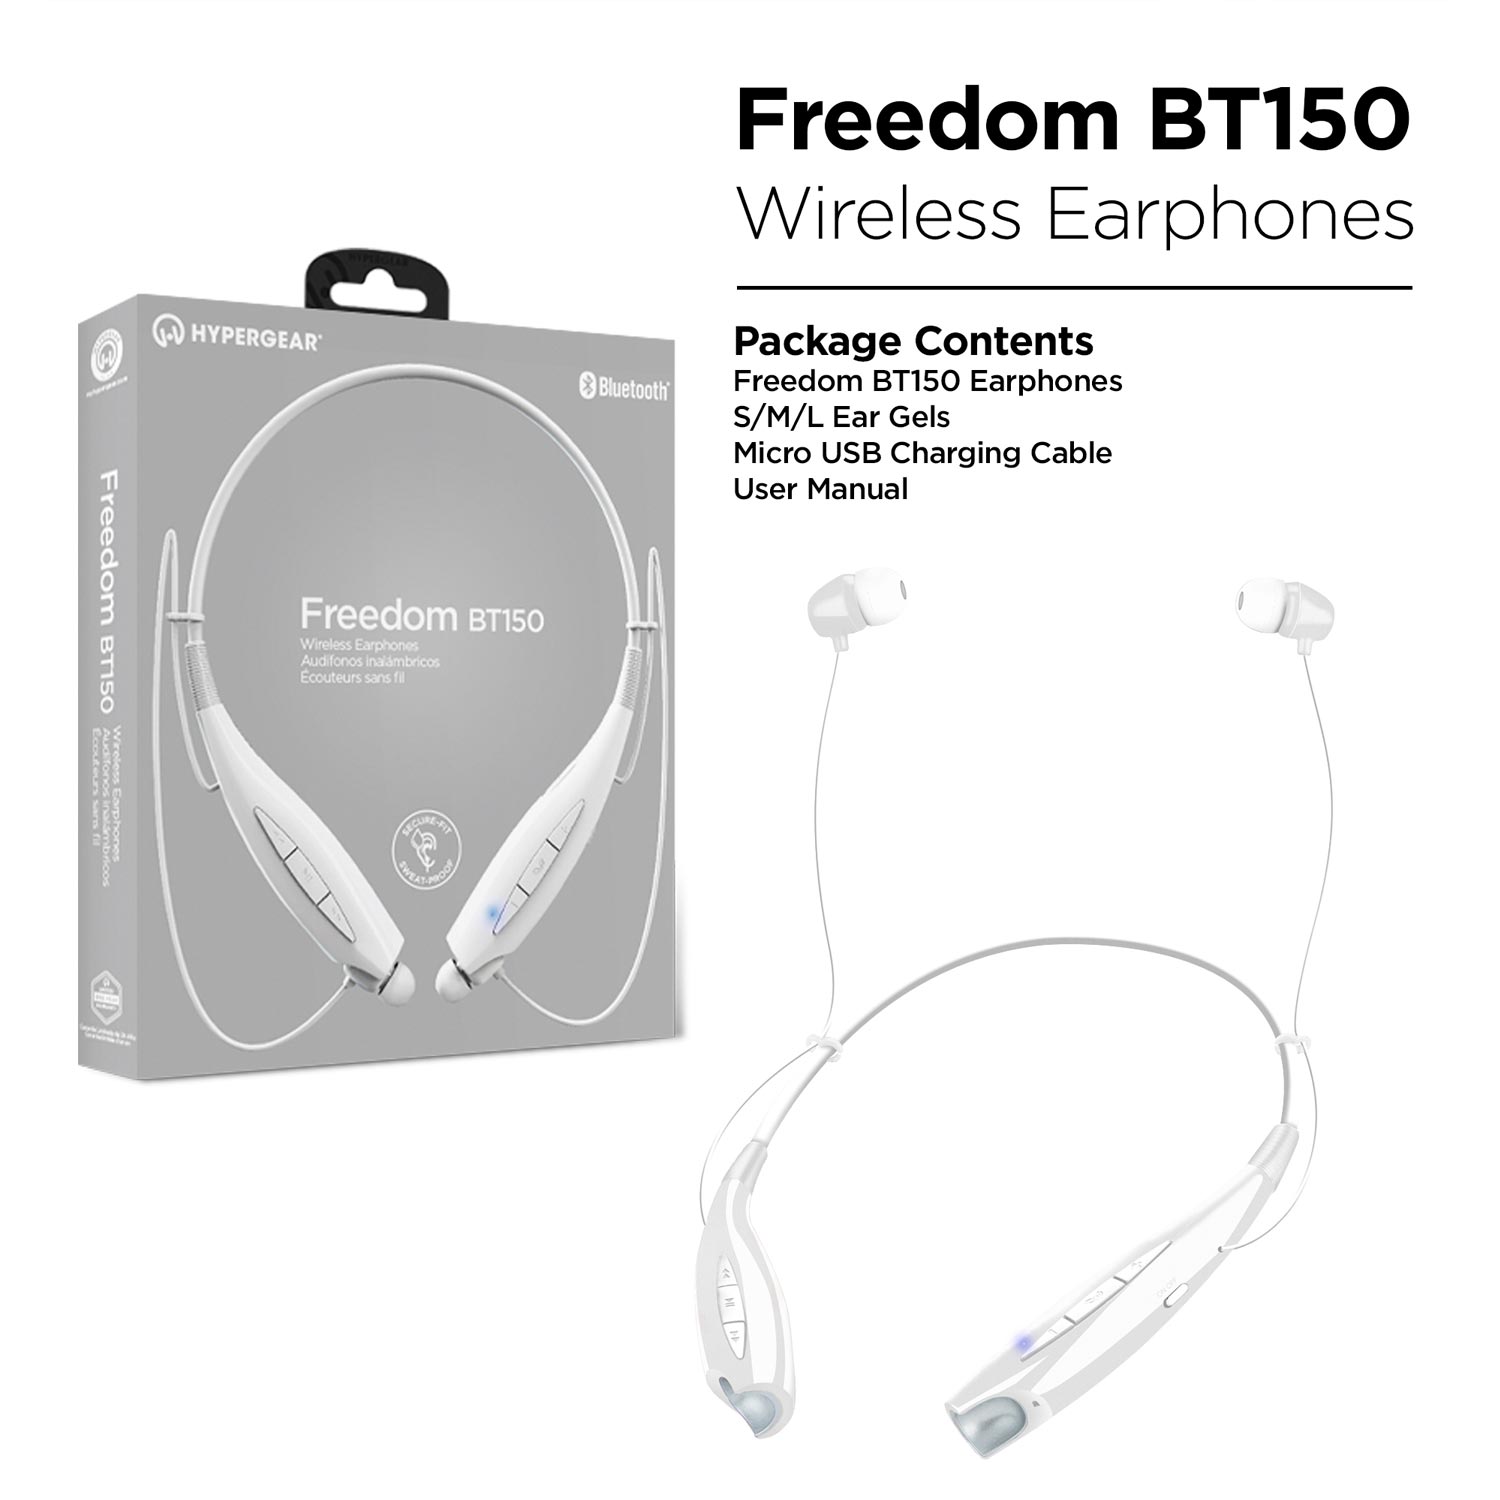 Freedom BT150 Wireless Earphones